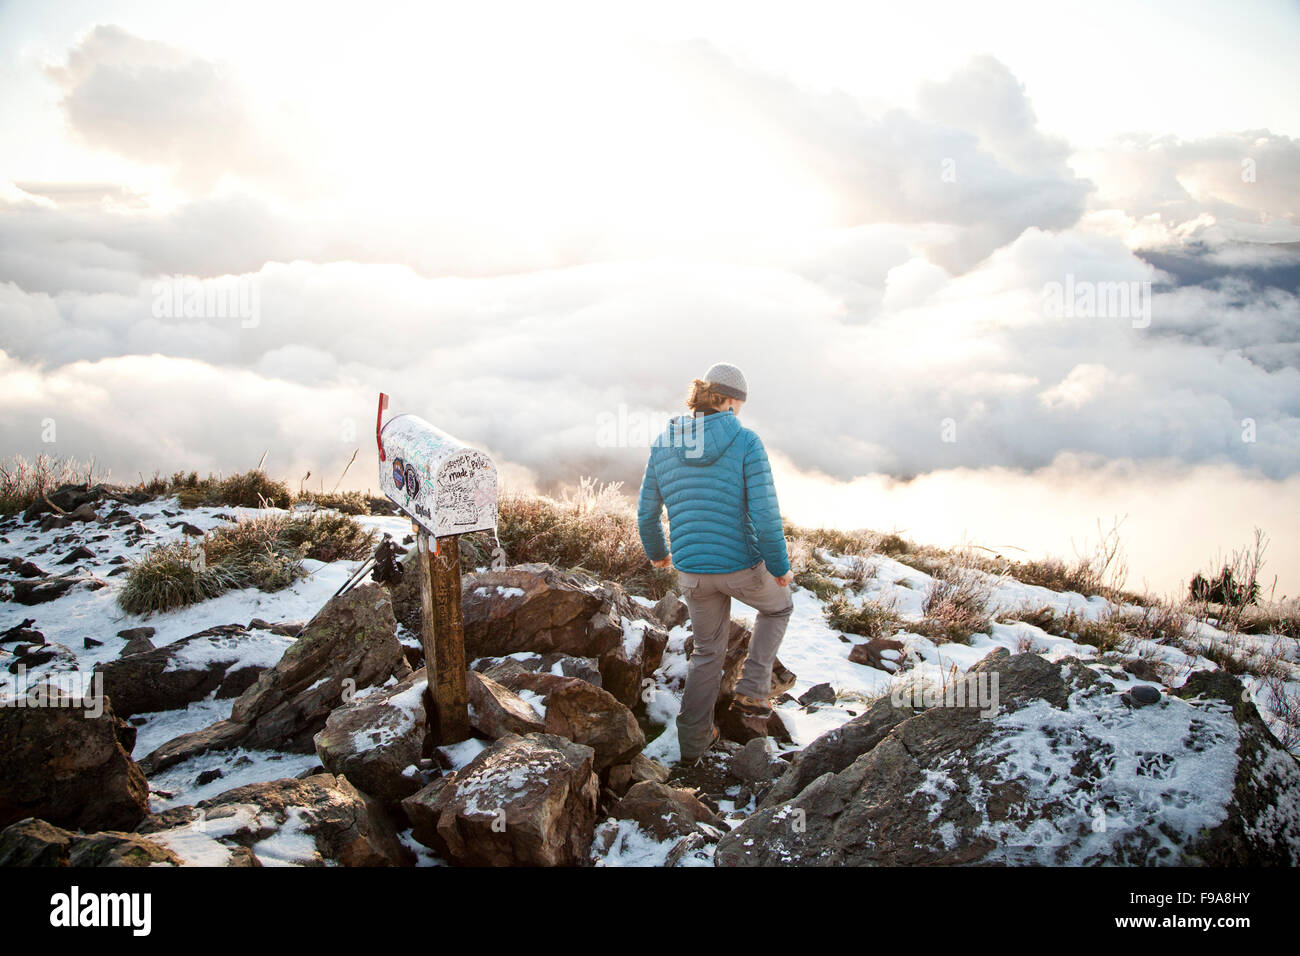 POSTFACH PEAK, NORTH BEND, WASHINGTON, USA. Eine junge Frau in eine Krickente Daunenjacke Wanderungen zwischen schneebedeckten Felsen und in der Nähe ein Postfach an der Spitze eines Berges. Stockfoto